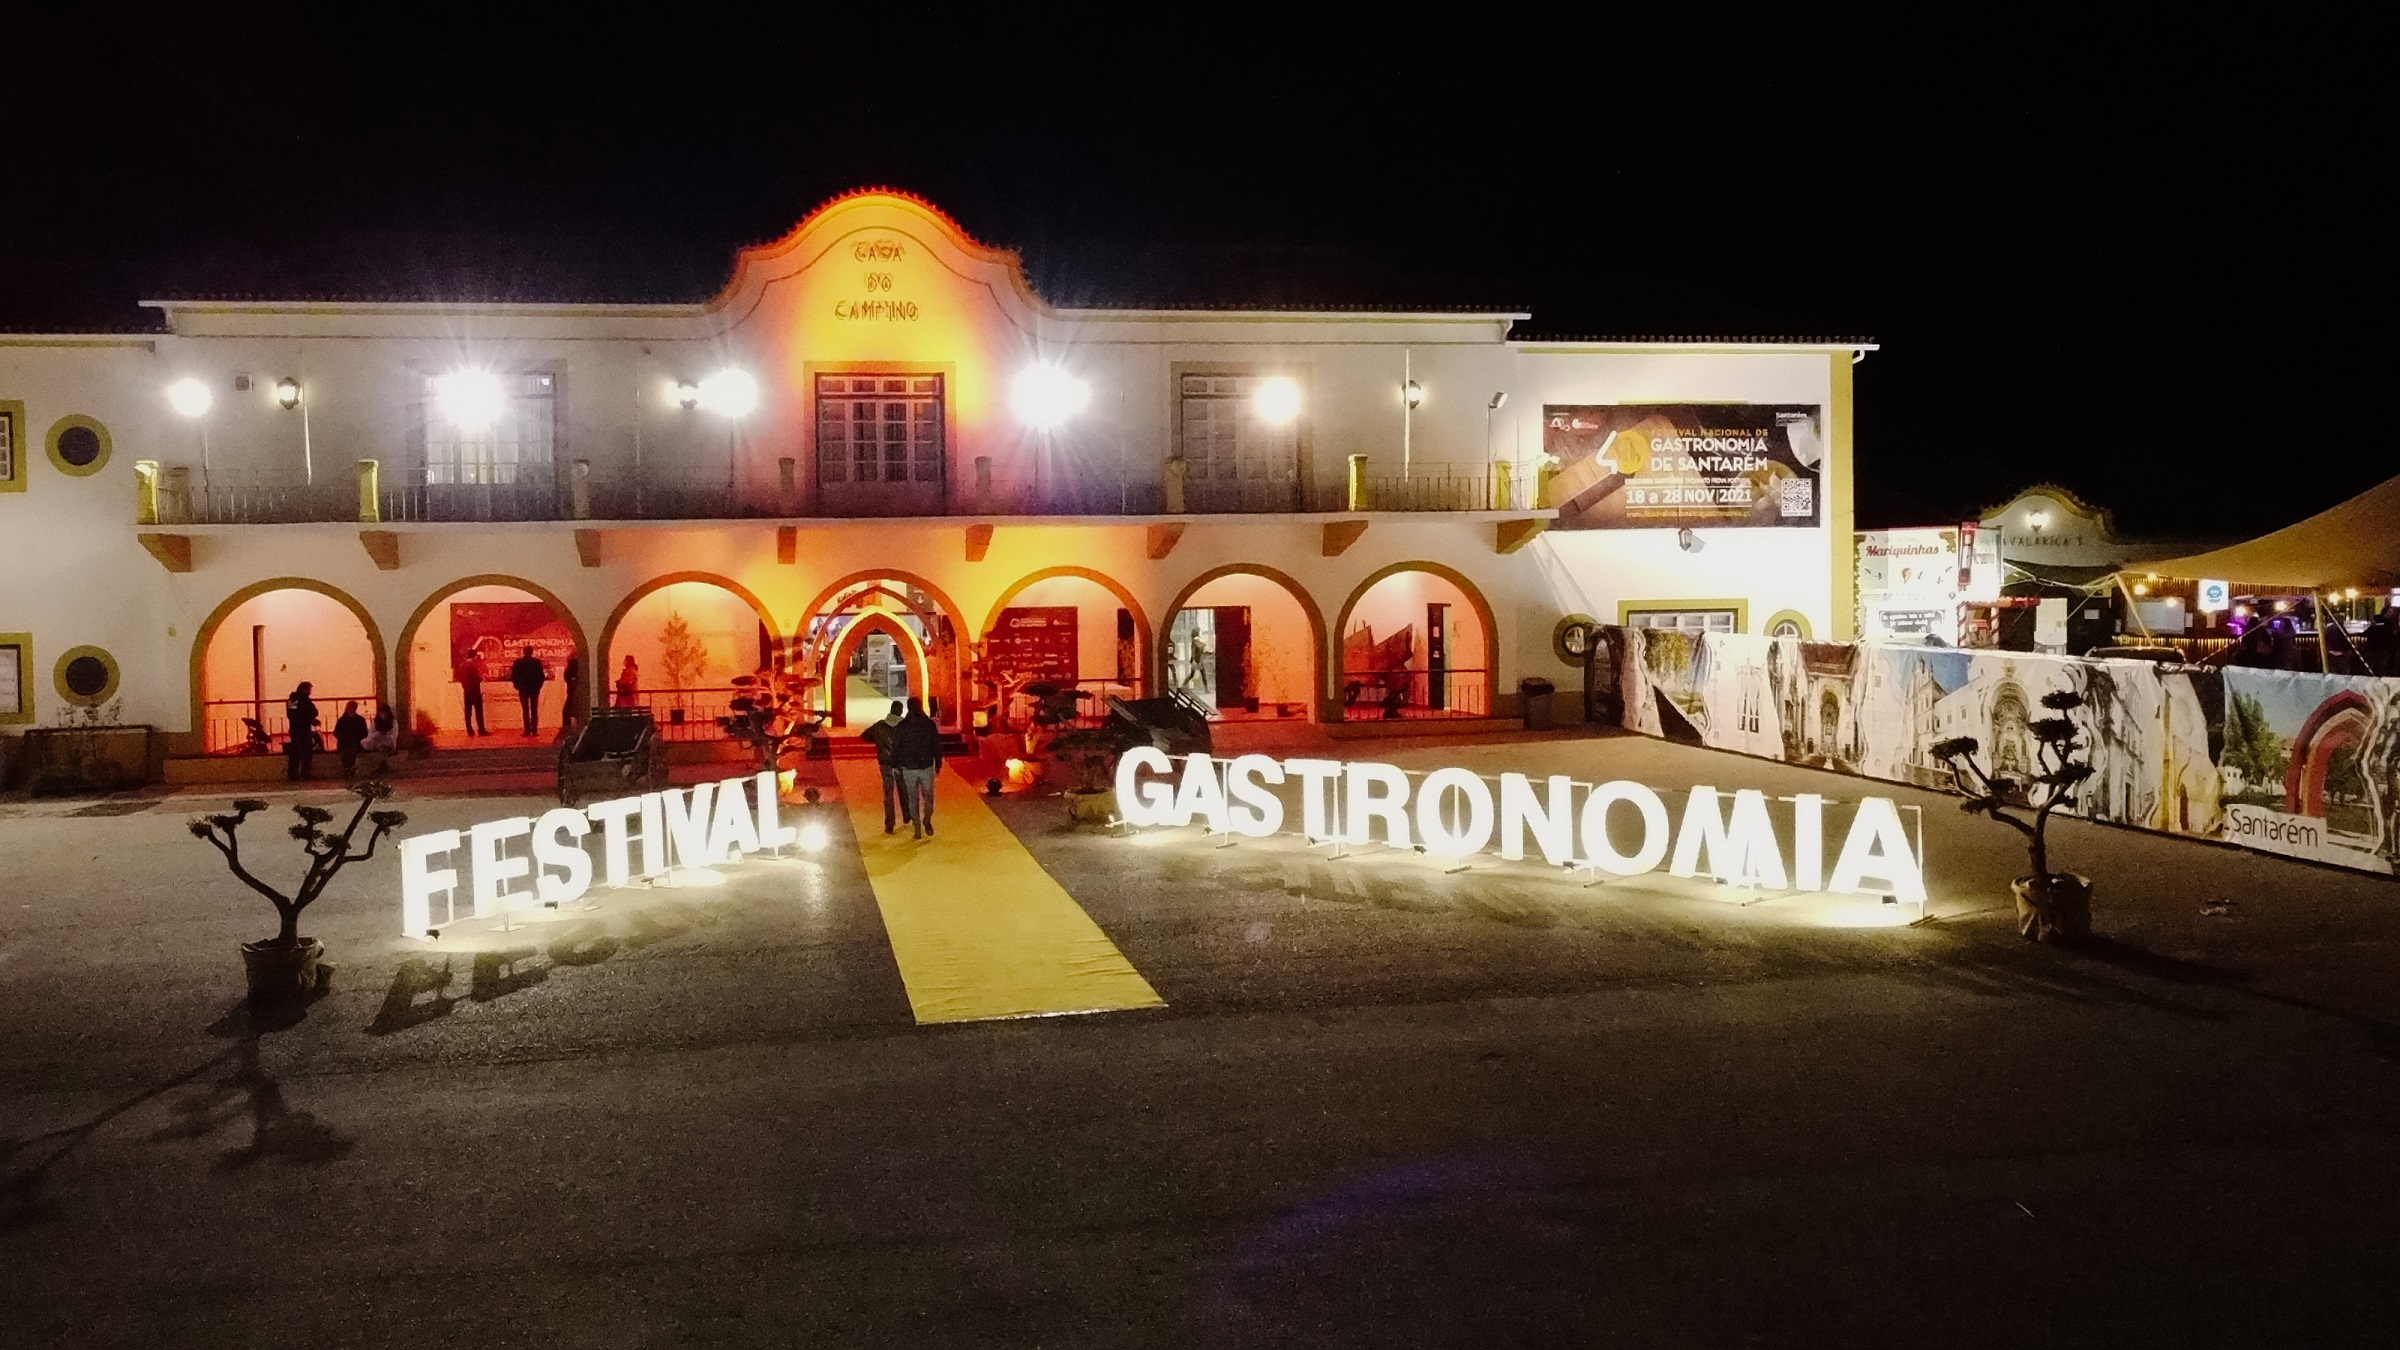 Portal Santarém - Festival musical é exibido em Santarém neste